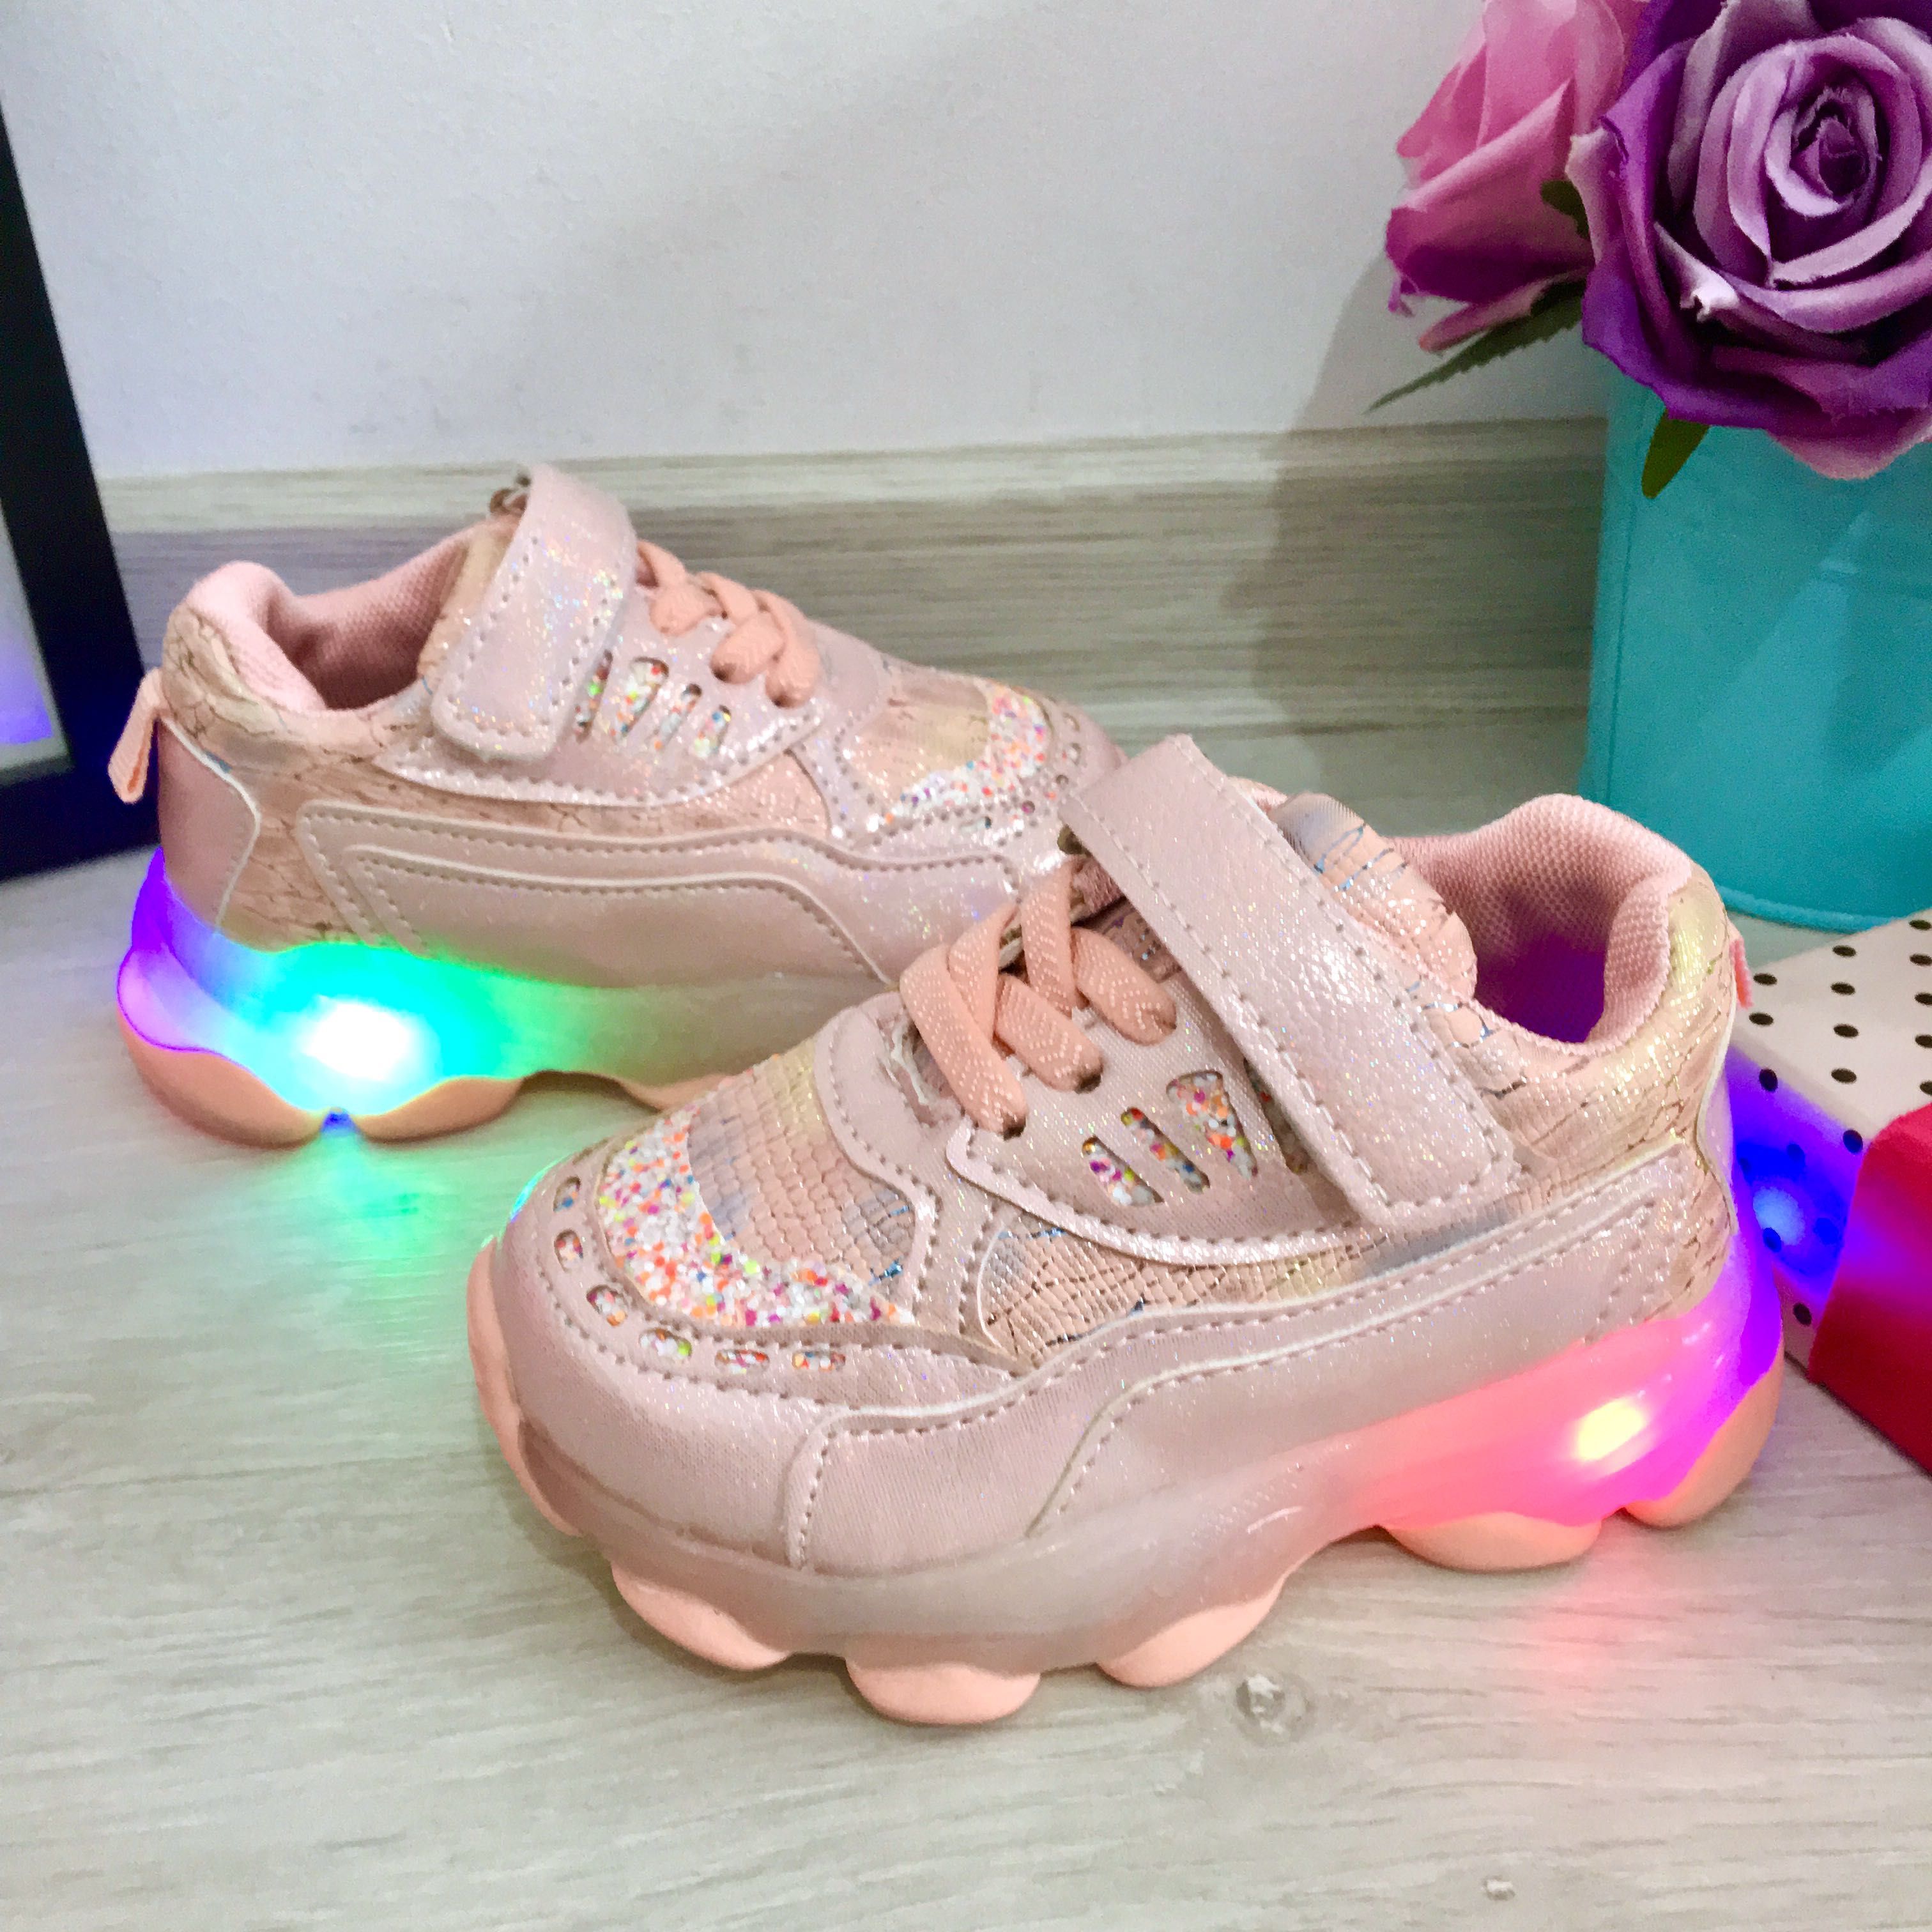 NOU Adidasi roz cu lumini LED si scai pt fete 21 22